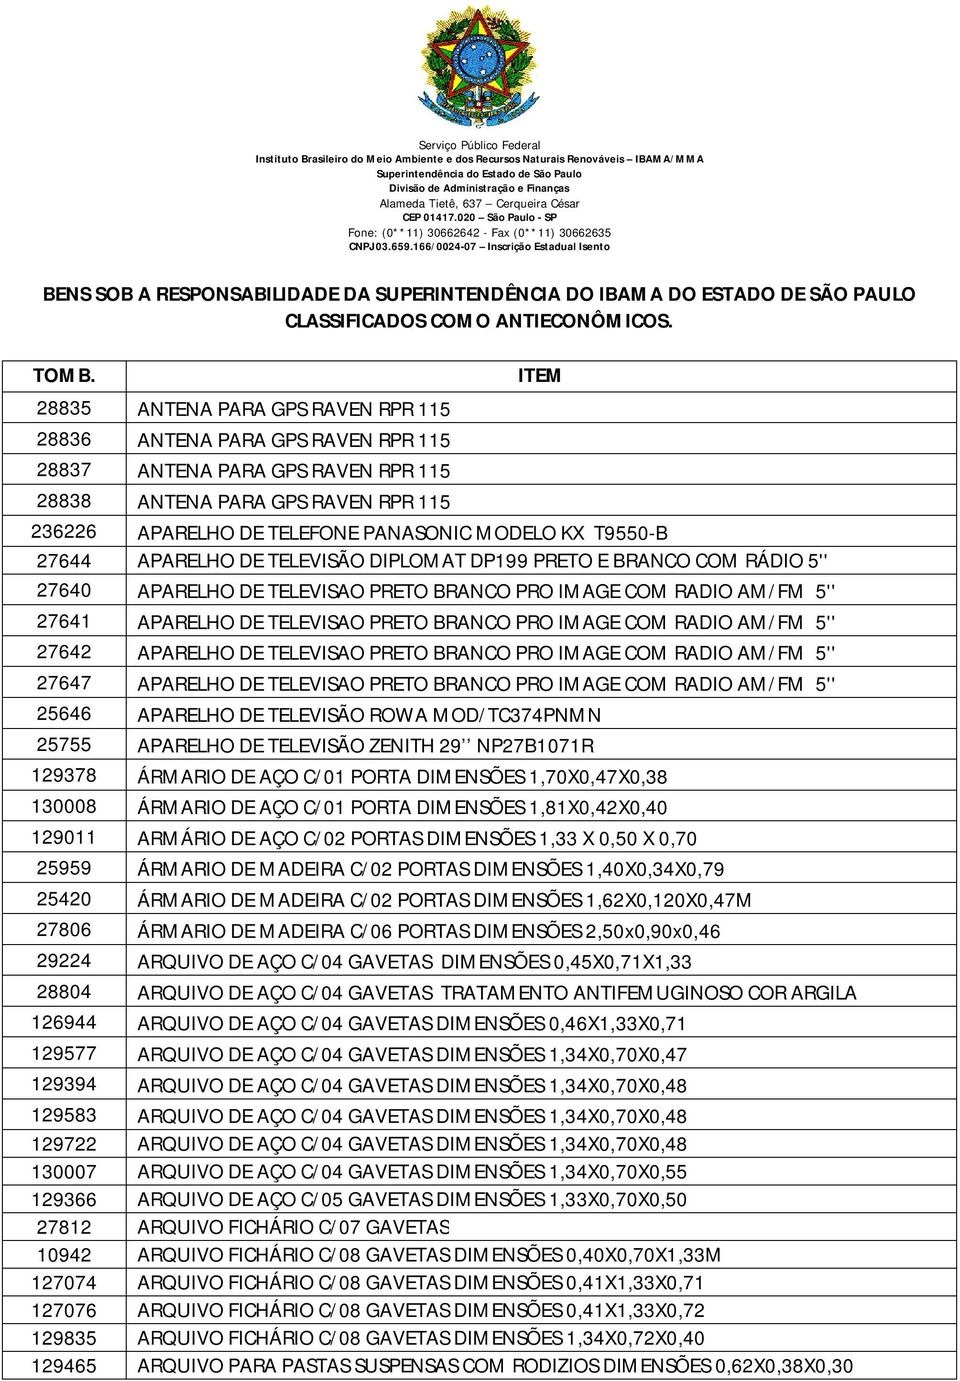 T9550-B 27644 APARELHO DE TELEVISÃO DIPLOMAT DP199 PRETO E BRANCO COM RÁDIO 5'' 27640 APARELHO DE TELEVISAO PRETO BRANCO PRO IMAGE COM RADIO AM/FM 5'' 27641 APARELHO DE TELEVISAO PRETO BRANCO PRO